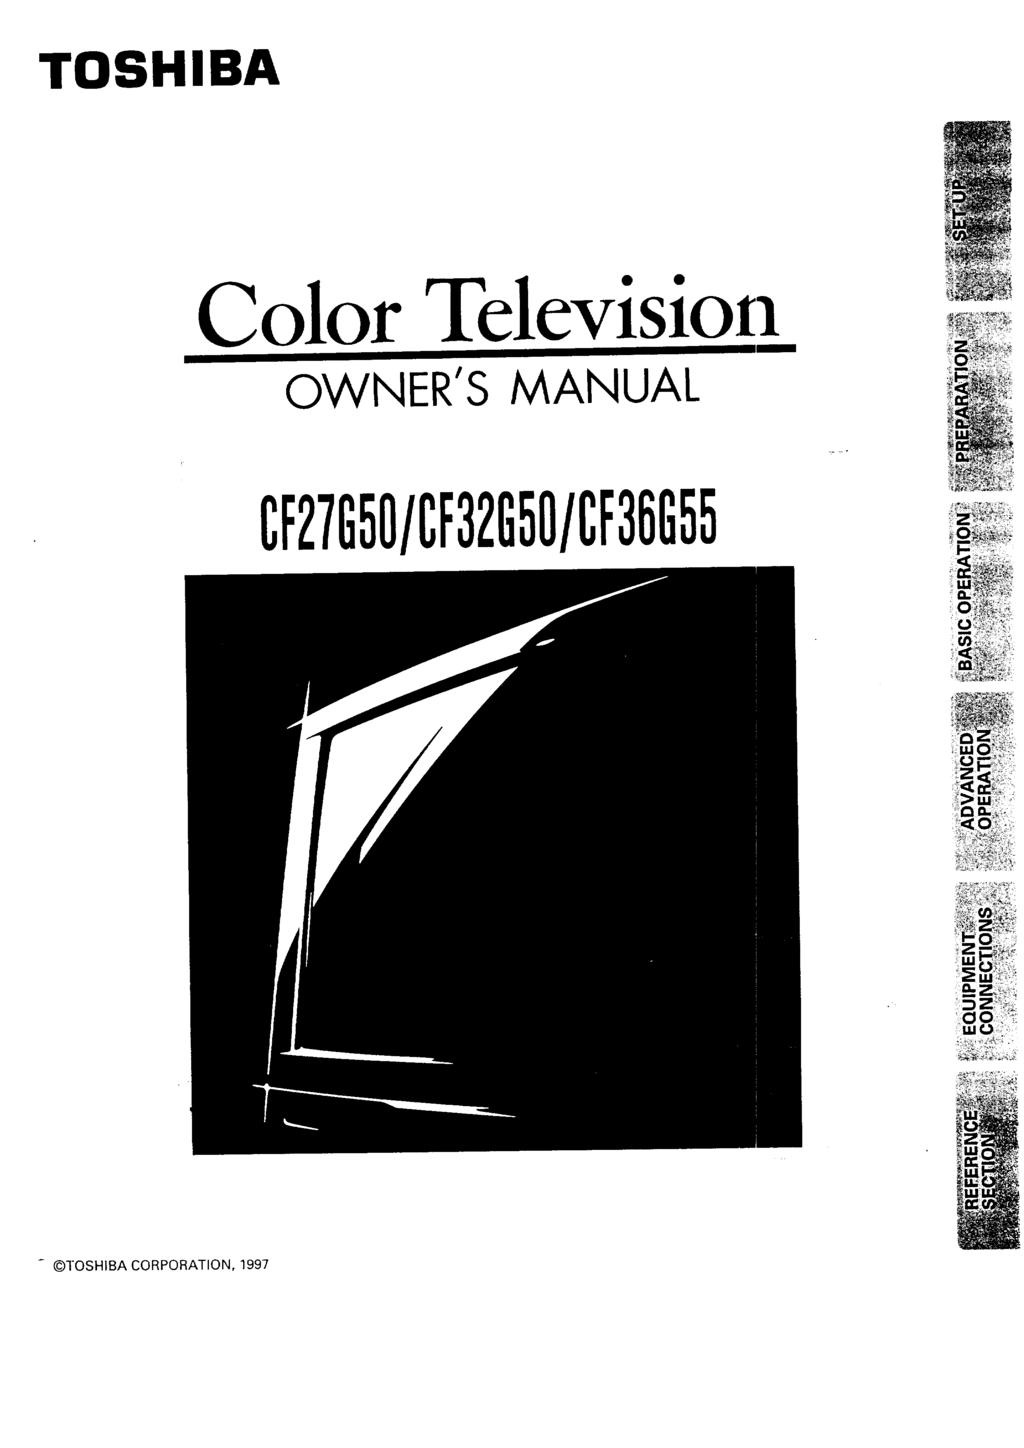 TSHIBA Color Televisio a WNER'S MANUAL